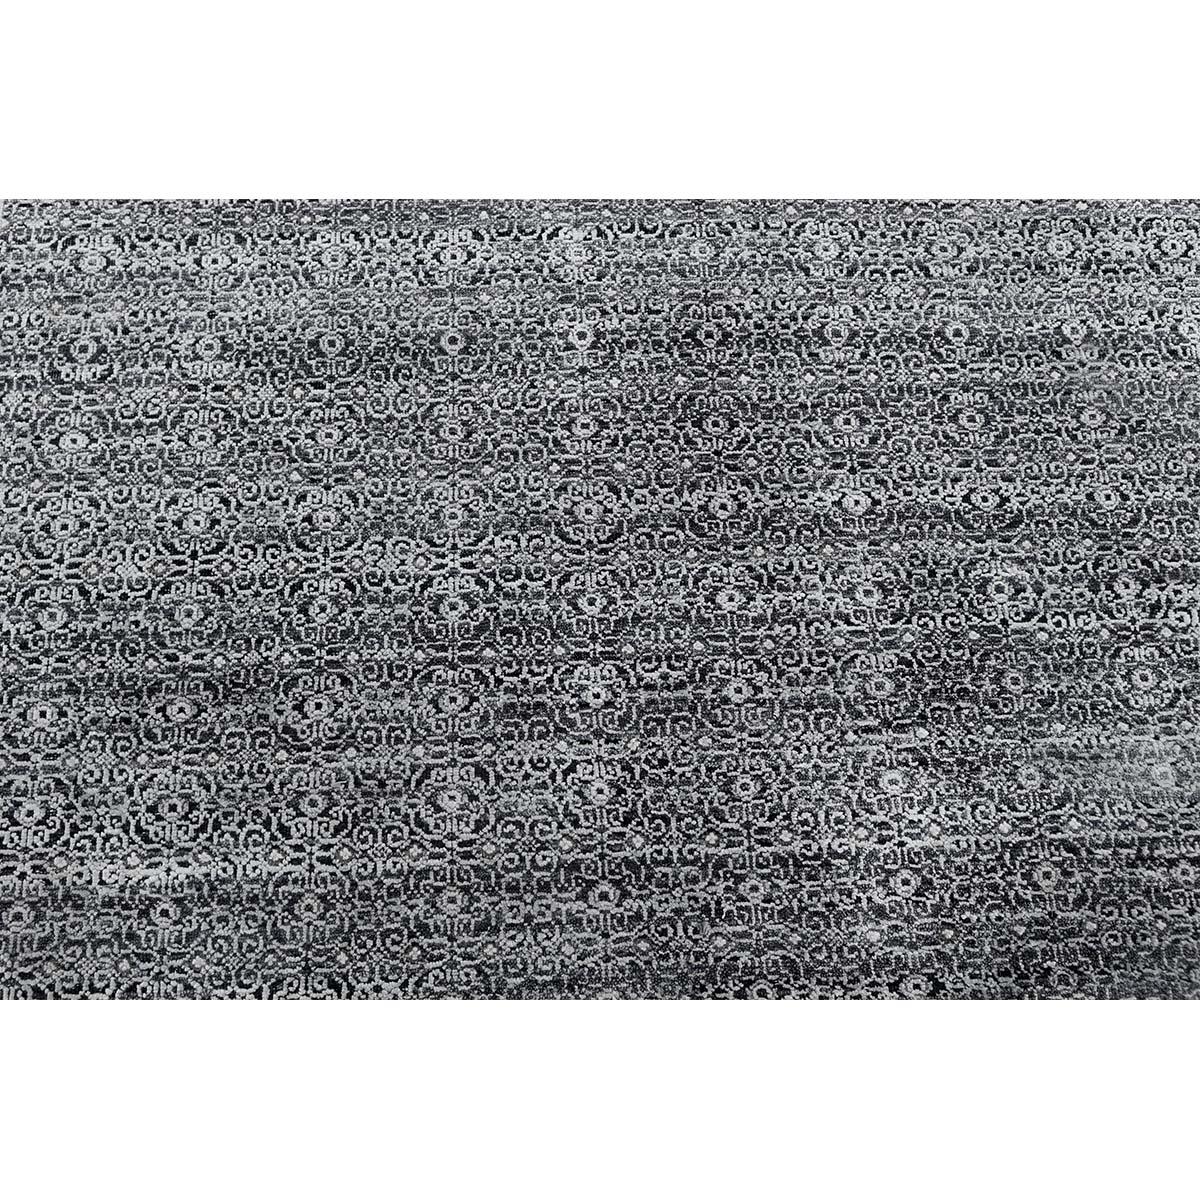 Dieser elegante handgewebte Teppich stammt aus Indien und ist aus feinster Wolle und Seide gewebt, um ein weiches und luxuriöses Stück zu schaffen, das sich in vielen verschiedenen Umgebungen gut macht.
